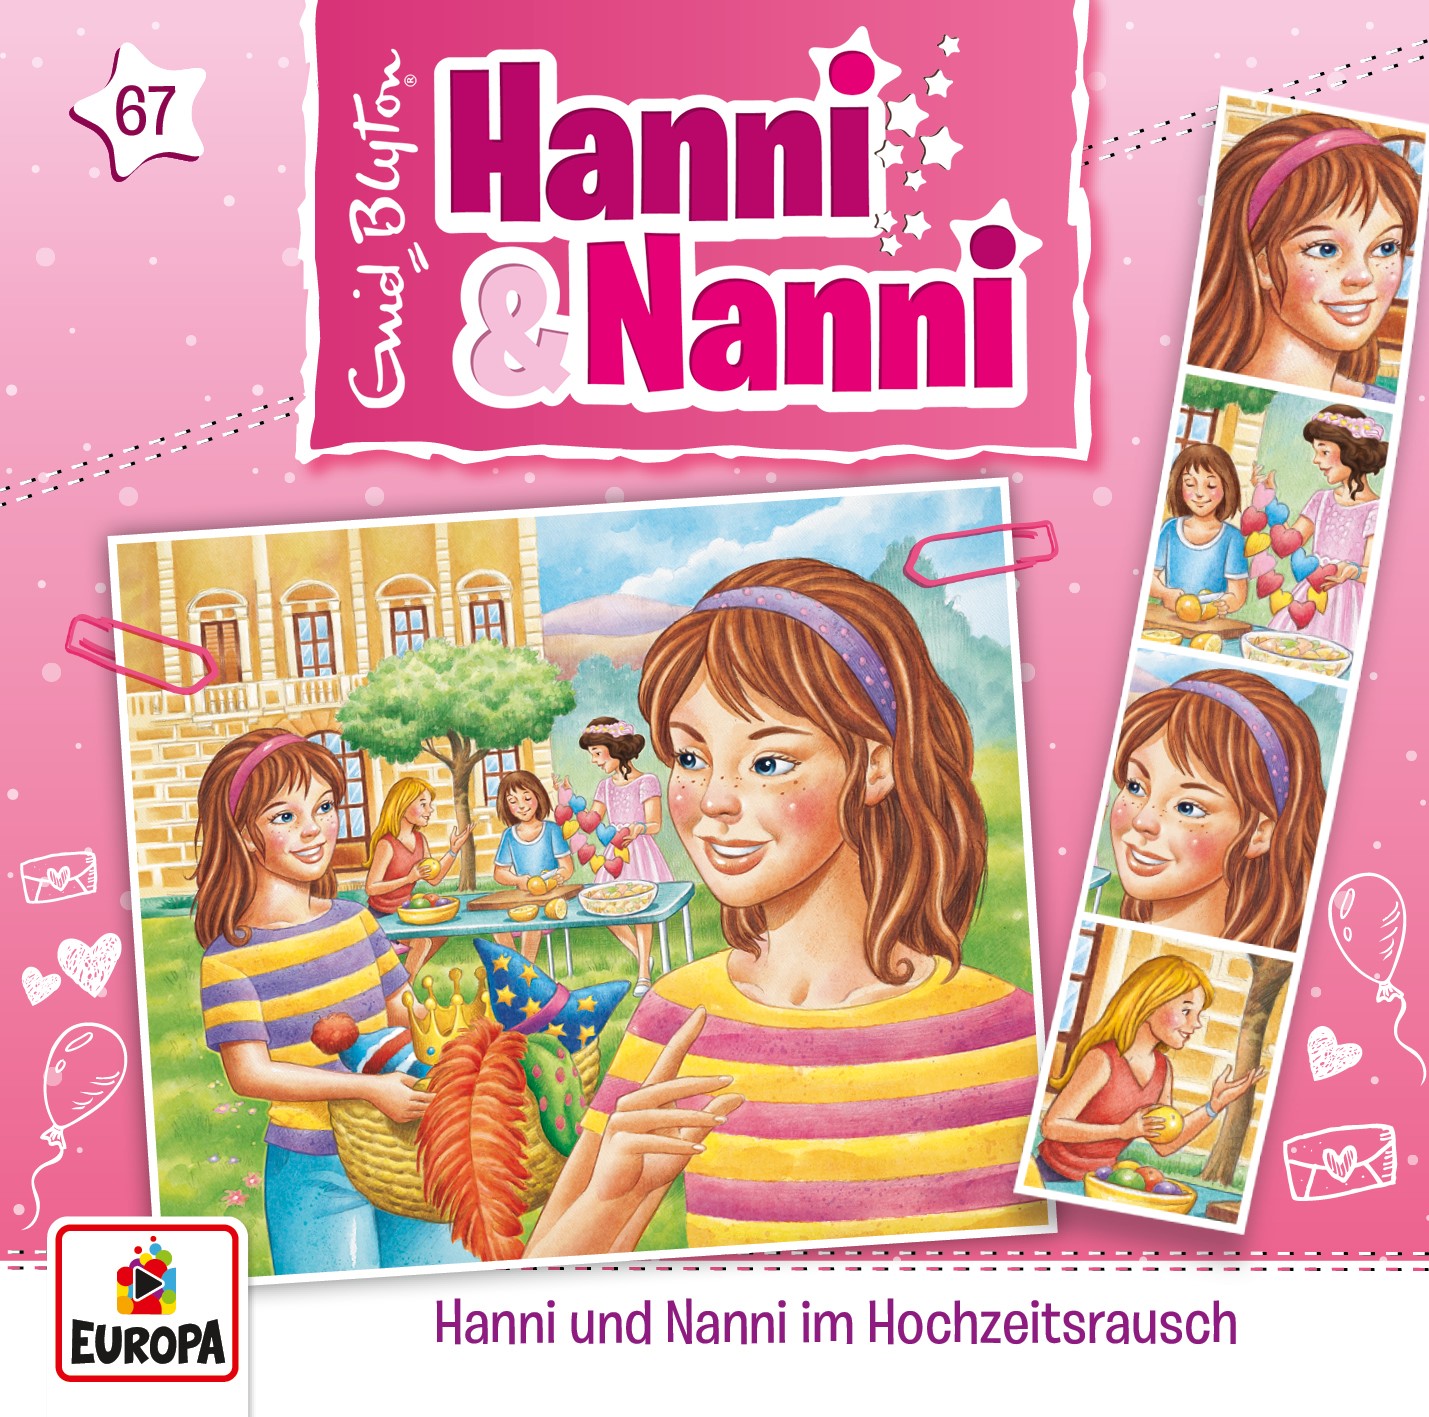 Hanni und Nanni - Hanni & Nanni im Hochzeitsrausch